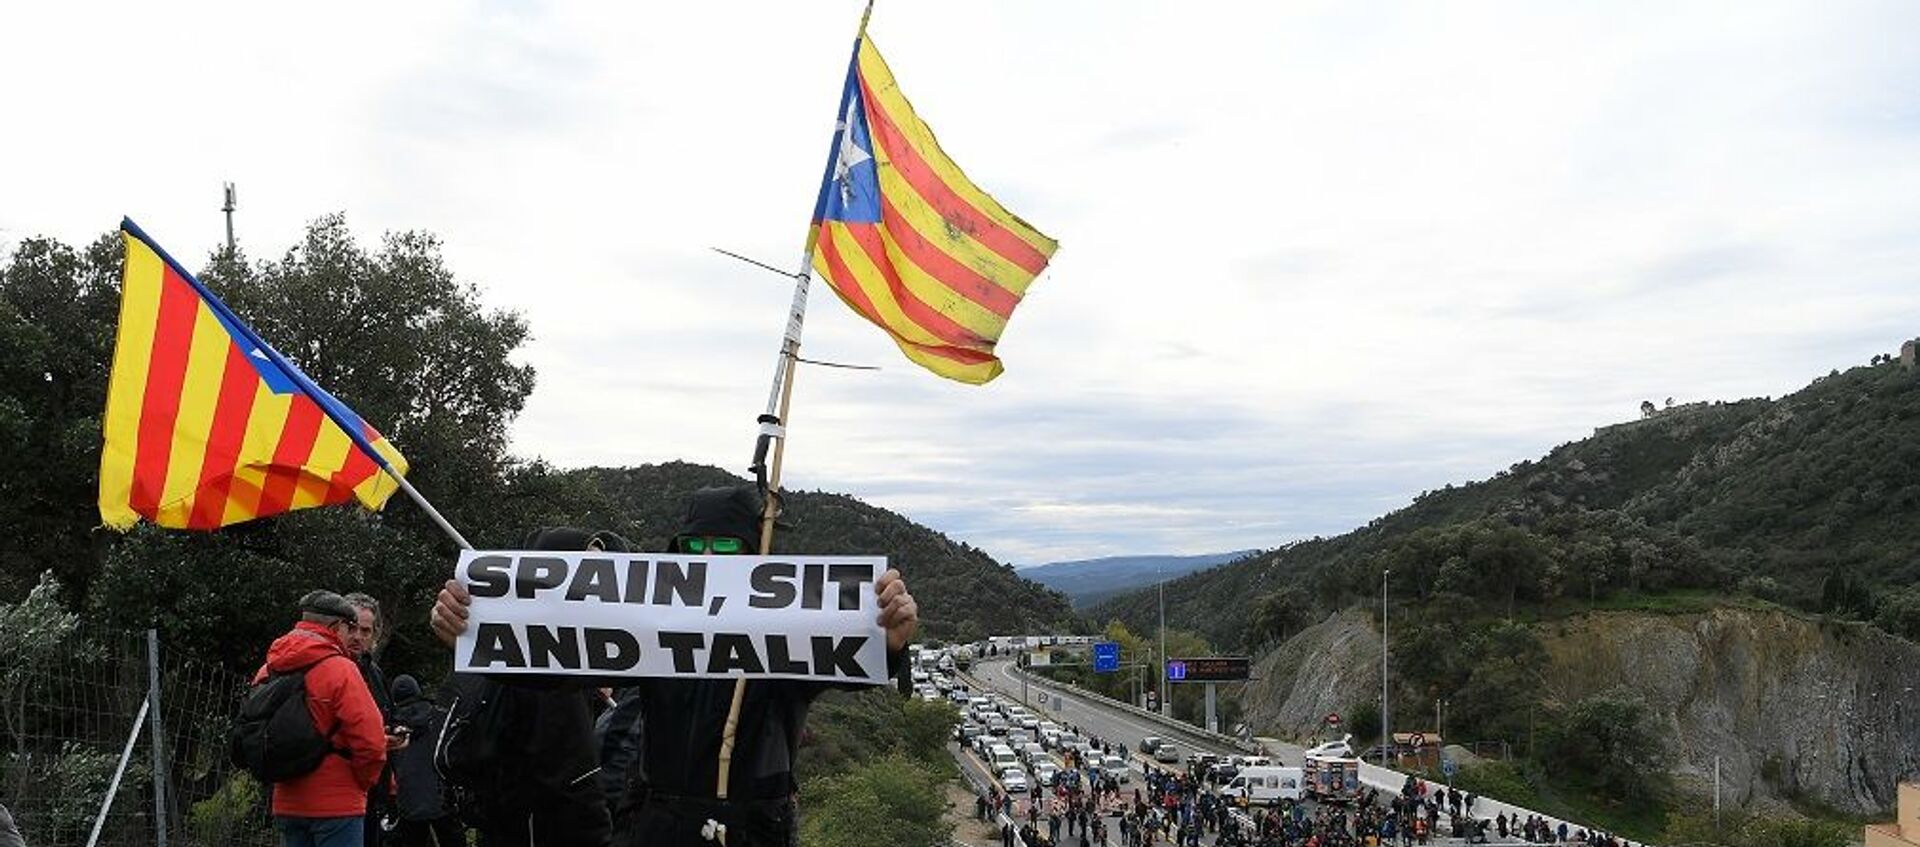 Katalonya'daki bağımsızlık girişimleriyle ilgili asla müzakere masasına oturmayacağını açıklayan İspanya'daki merkezi hükümete atfen, bazı eylemcilerin ellerinde İspanya, otur ve konuş yazılı pankartlar taşıdığı görüldü. - Sputnik Türkiye, 1920, 22.06.2021